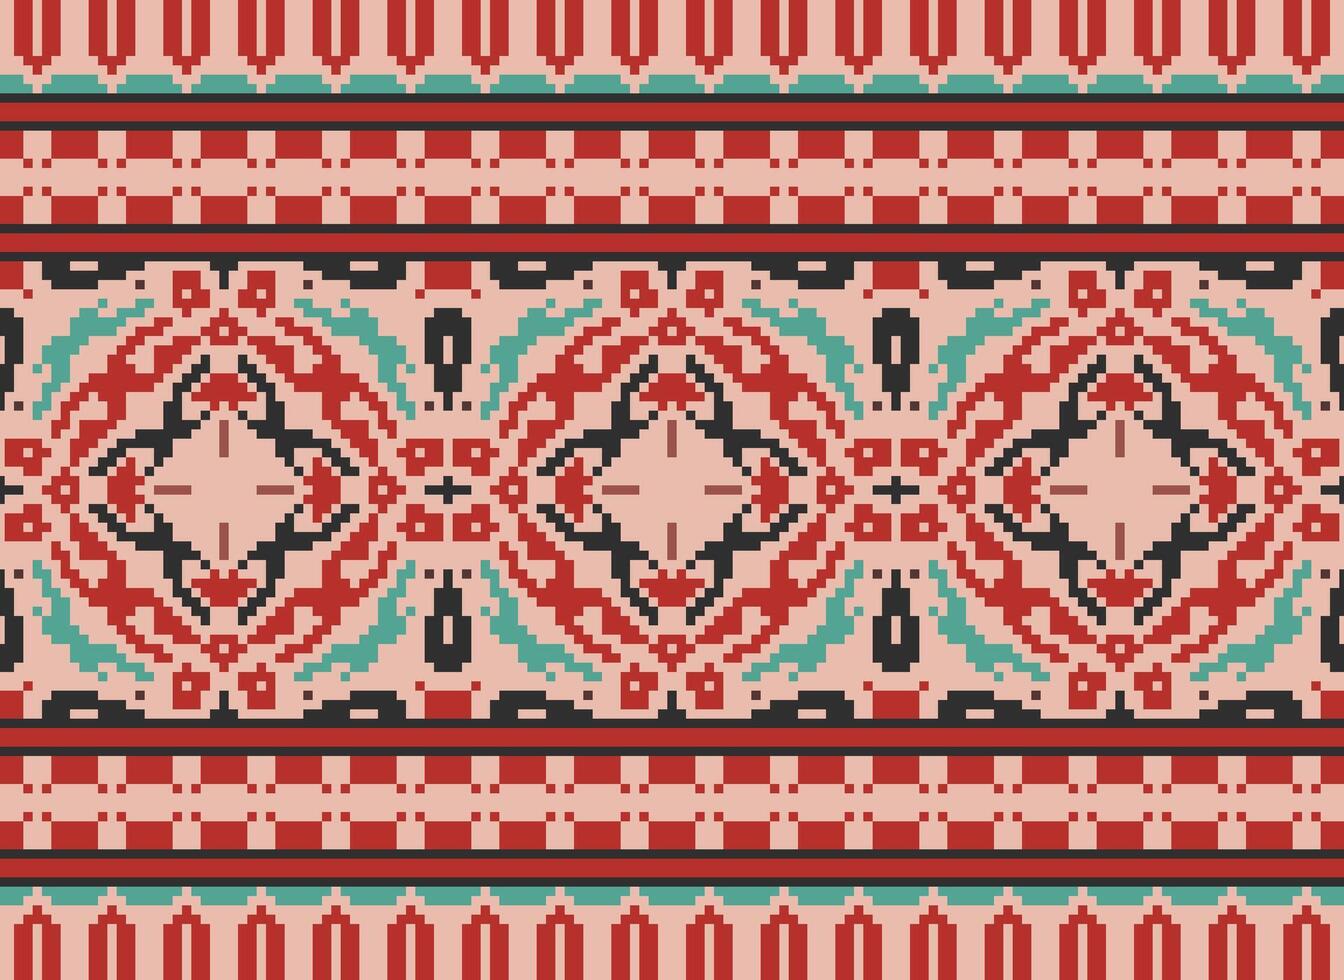 americano étnico nativo padrão.tradicional navajo, asteca, apache, sudoeste e mexicano estilo tecido padrão.abstrato motivos padrão.design para tecido, roupas, cobertor, tapete, tecido, envoltório, decoração vetor